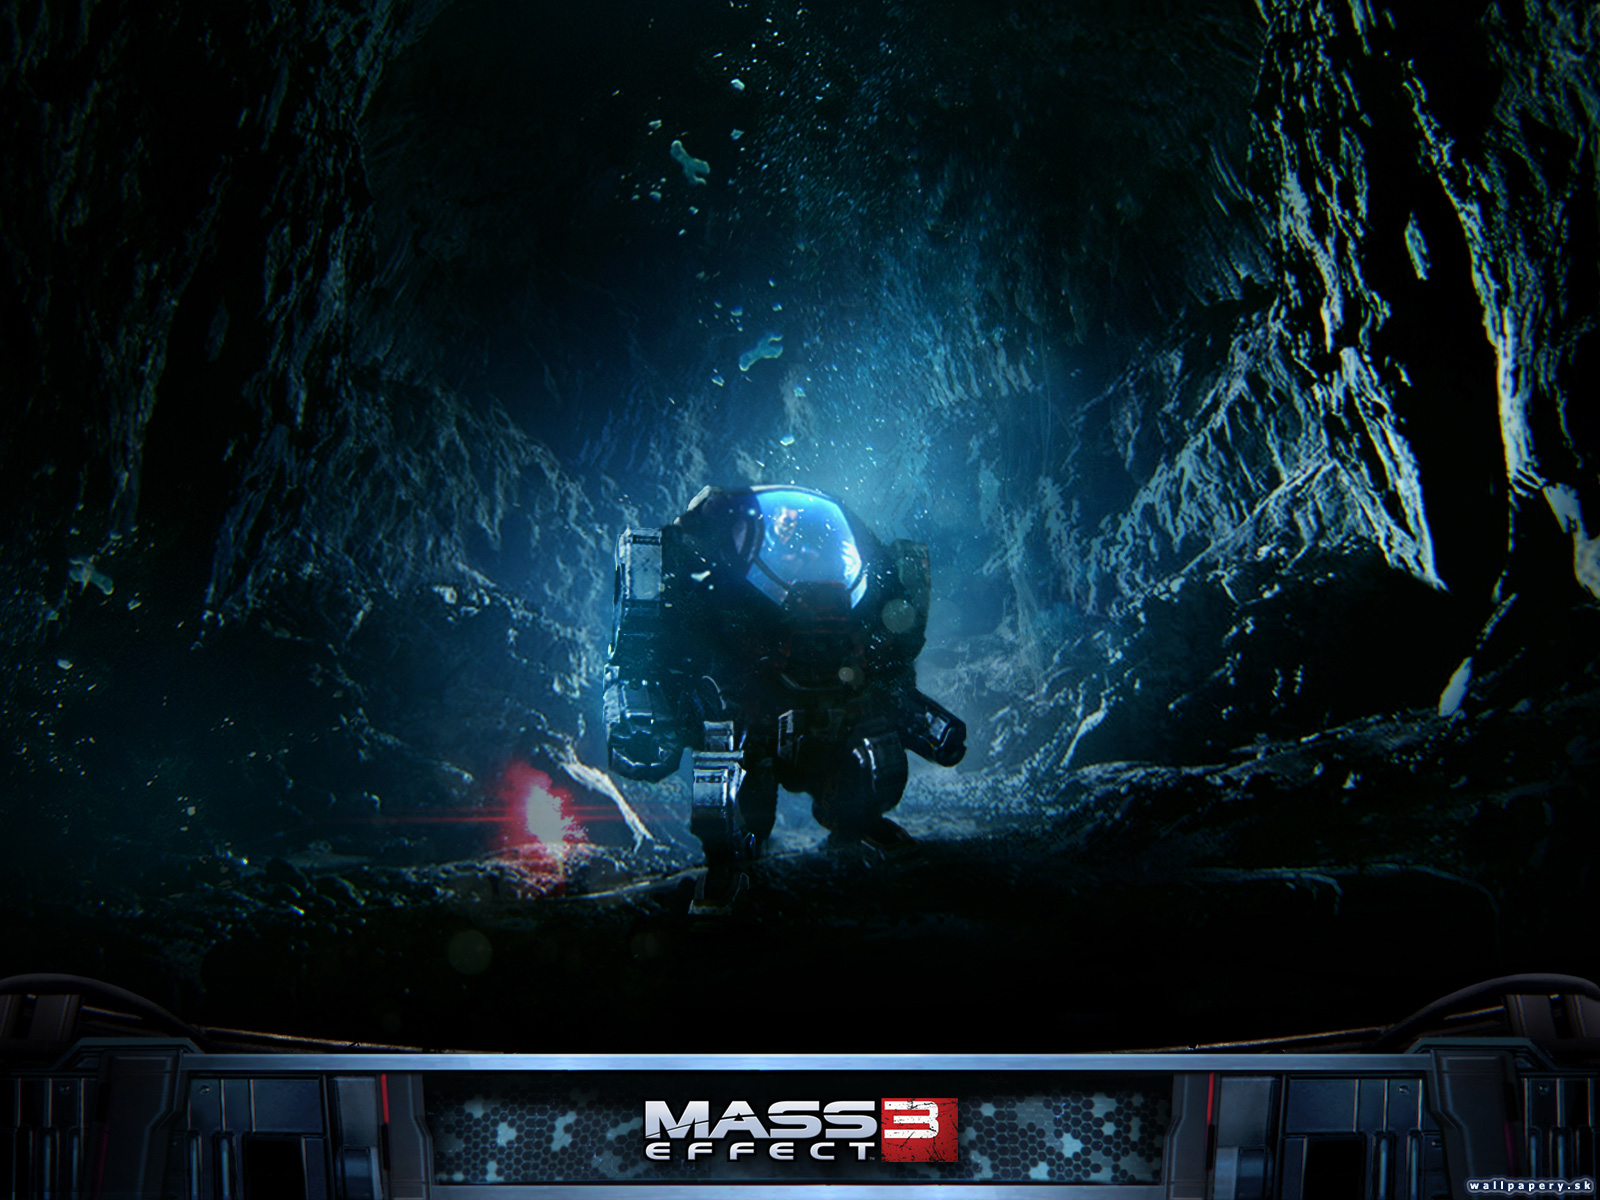 Mass Effect 3: Leviathan - wallpaper 1